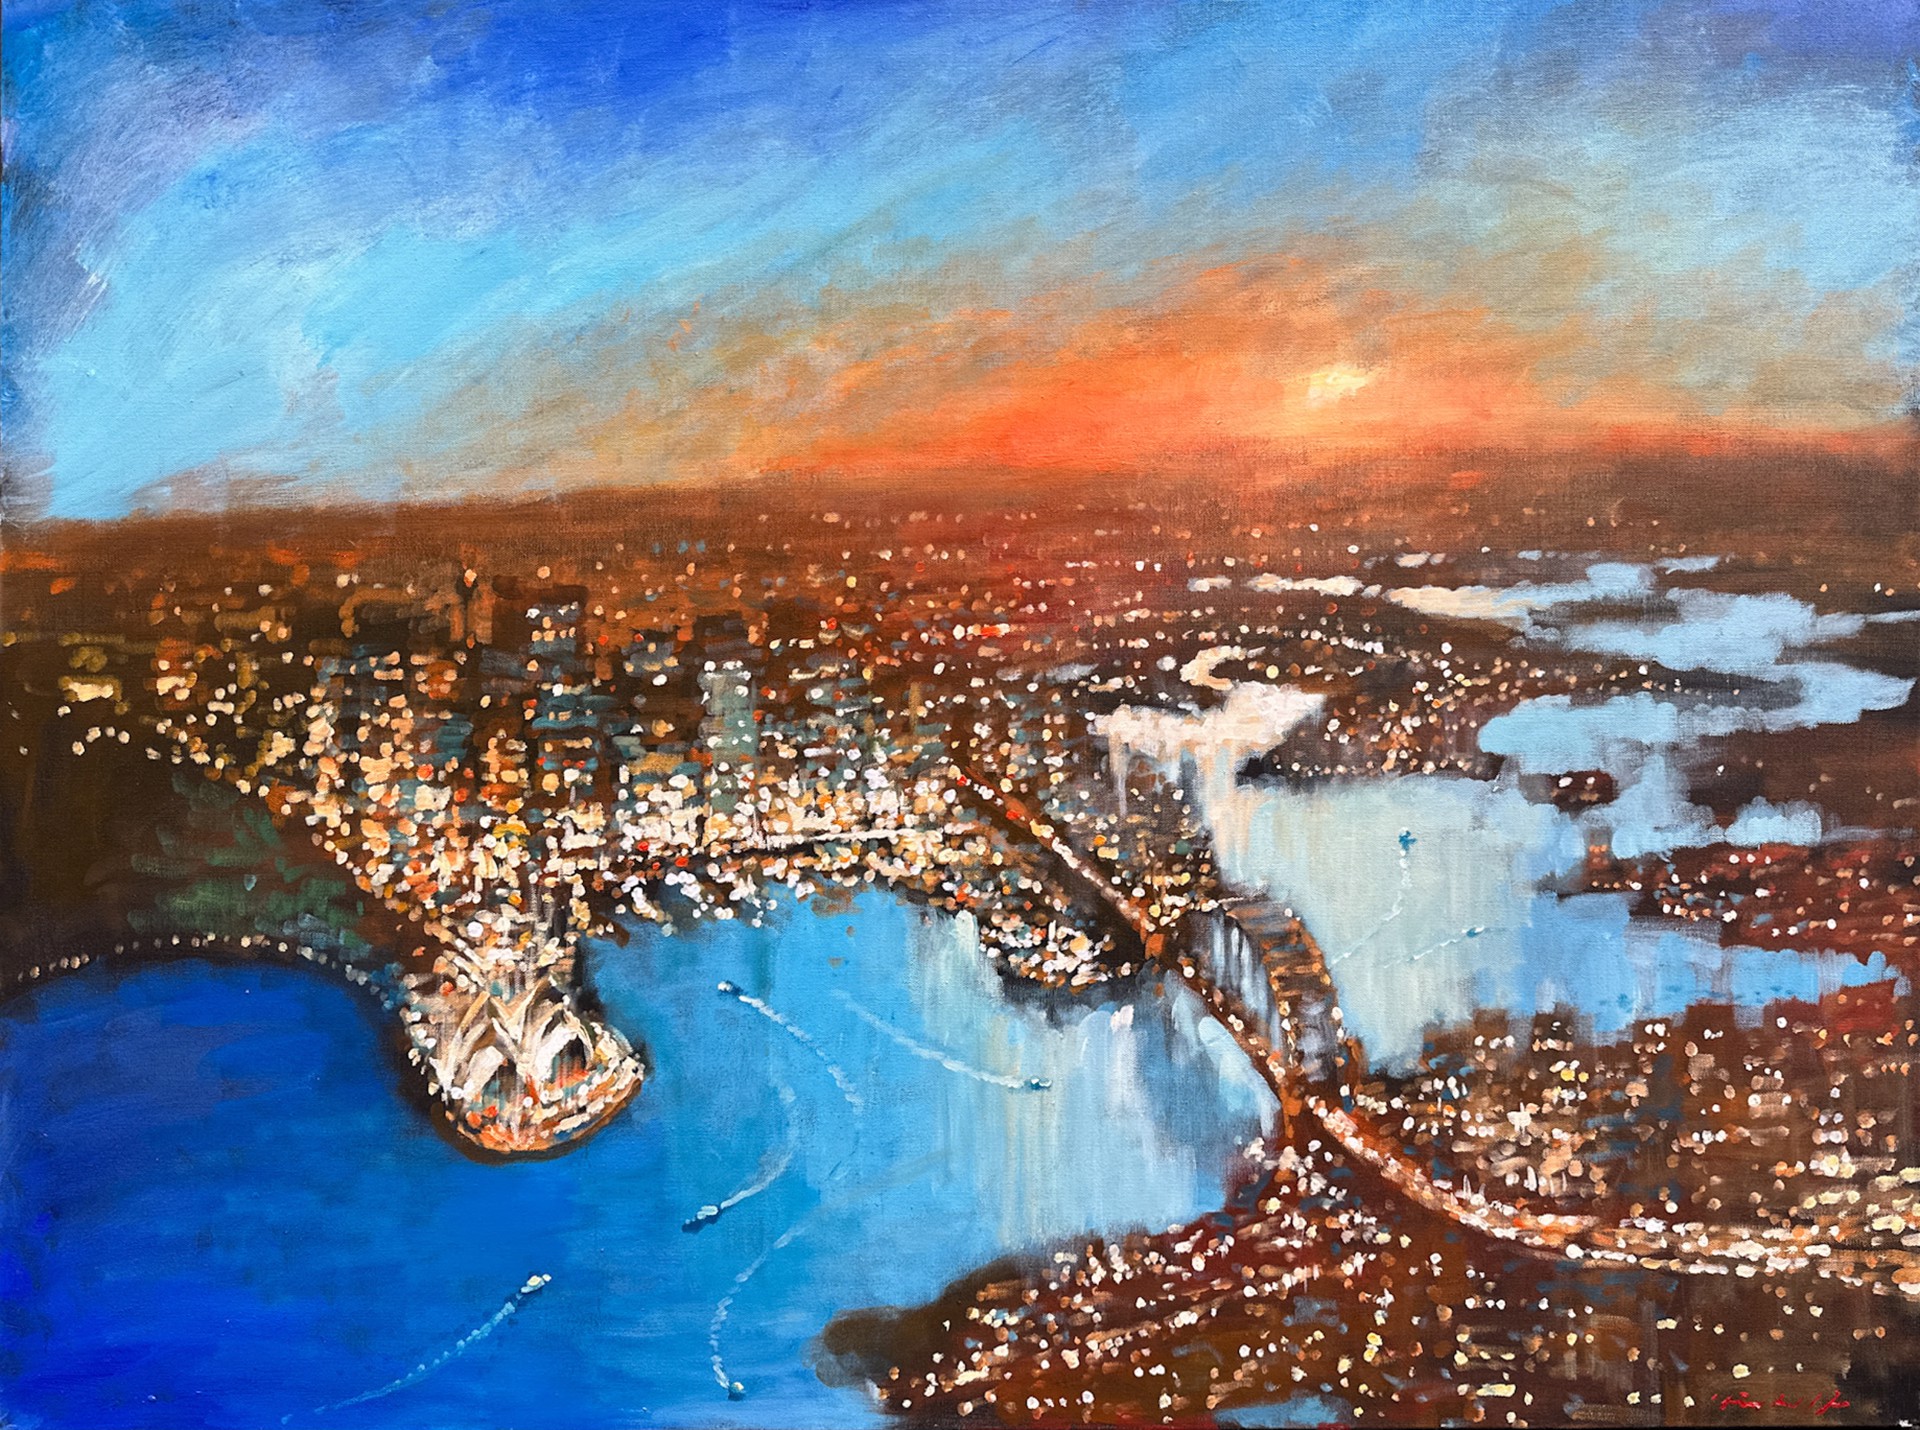 Evening Glow, Sydney by David Hinchliffe